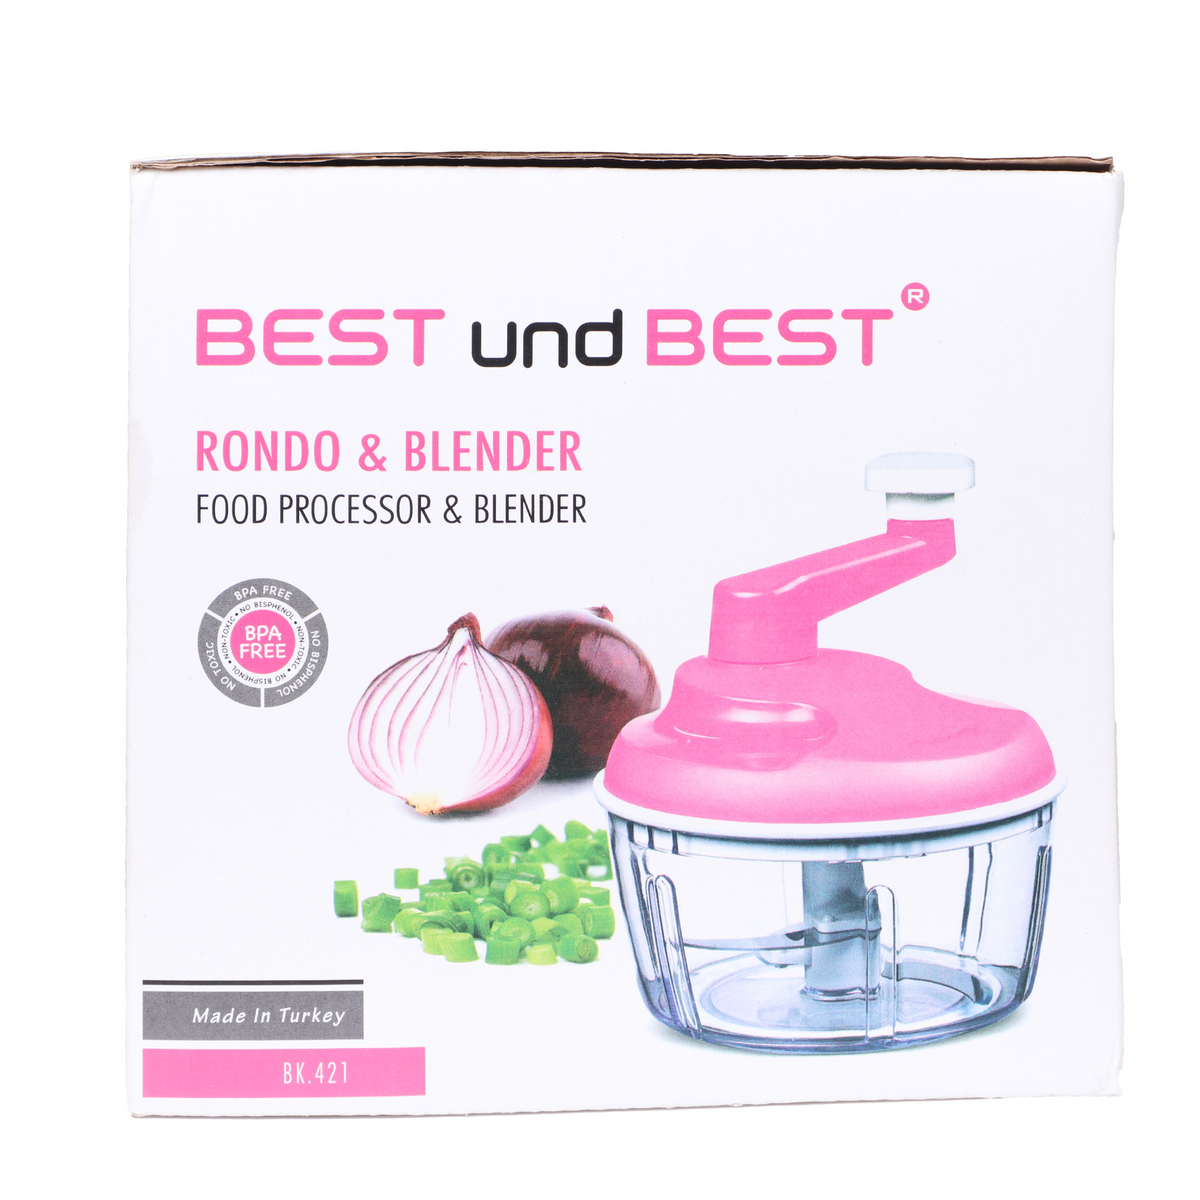 Best Bk-421 Best Kitchen Robot Manual Und Best Rondo & Blender